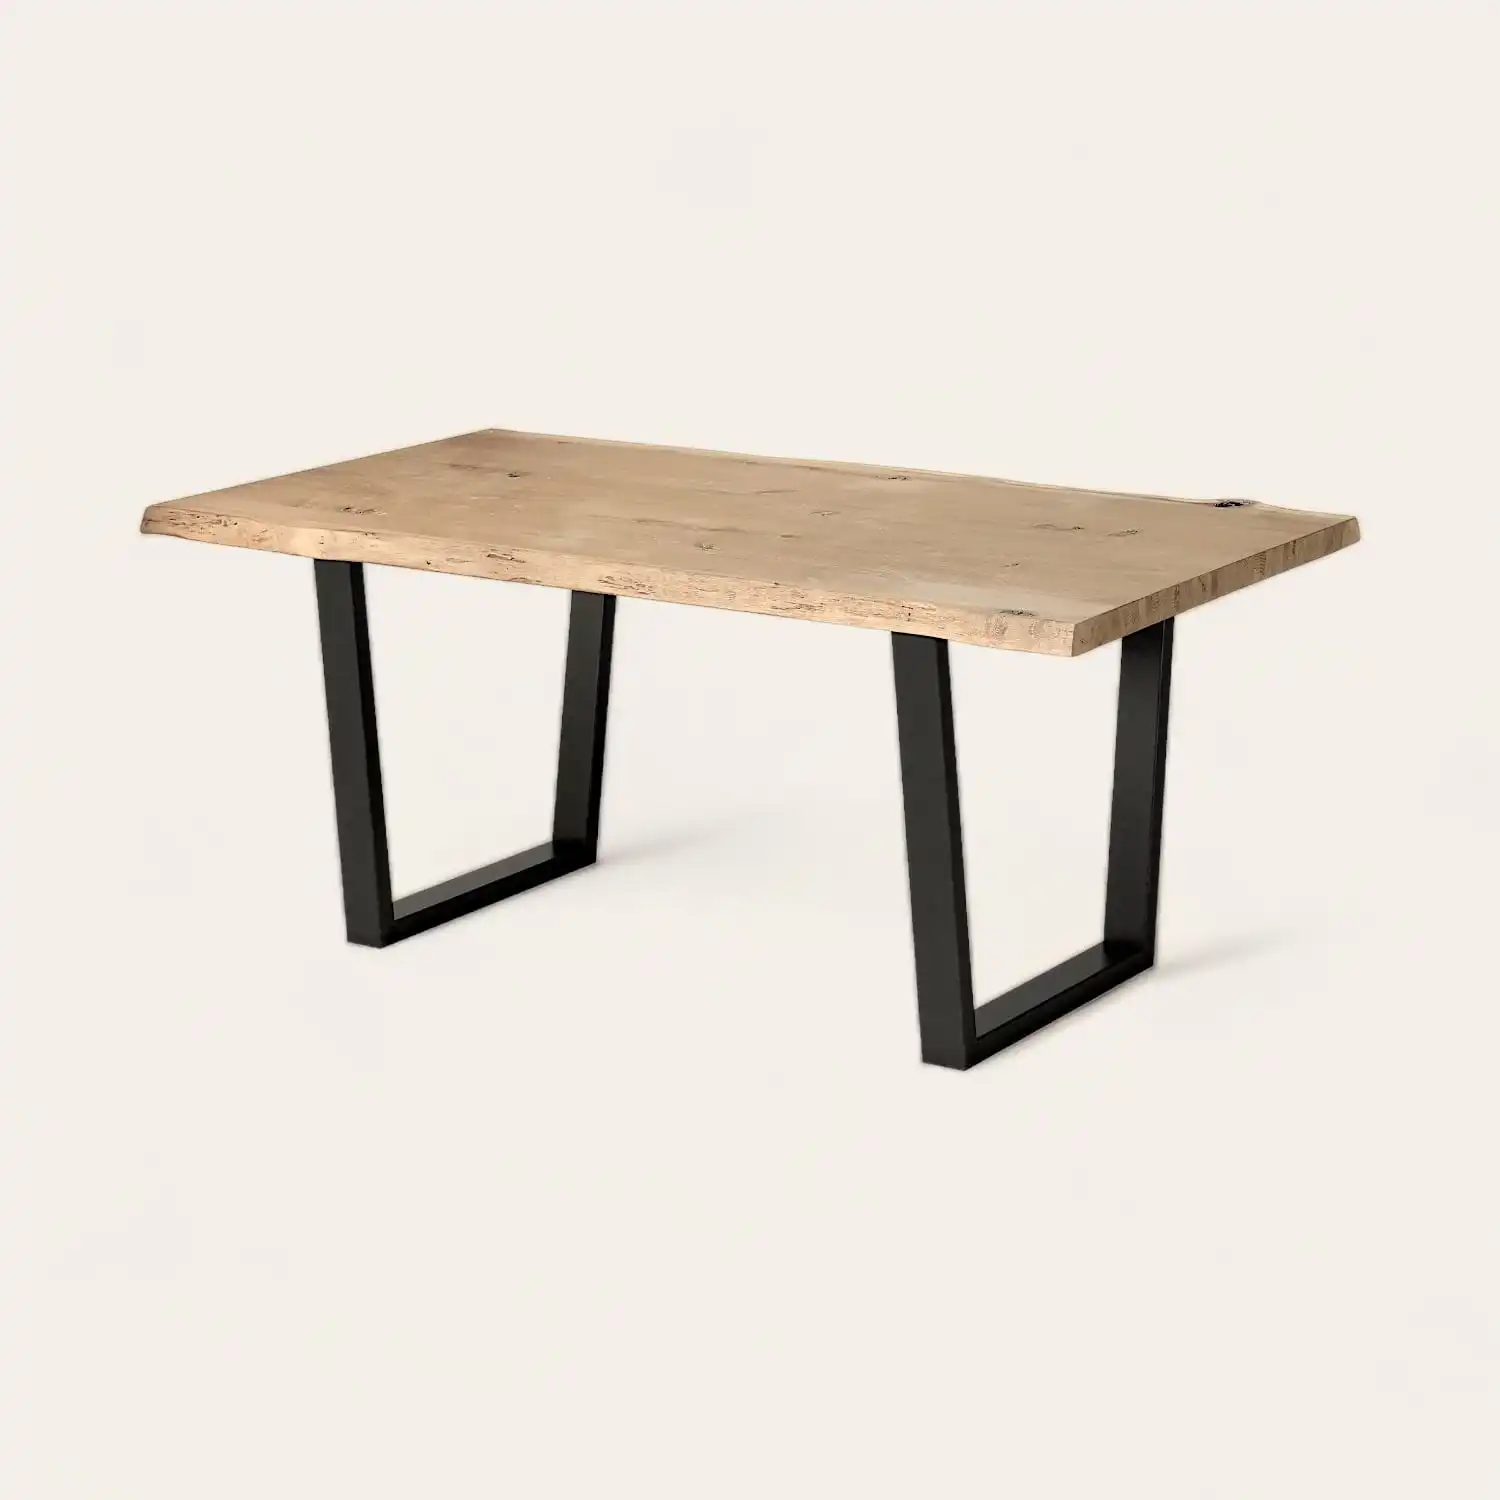  Une table à manger en bois rustique avec pieds noirs. 